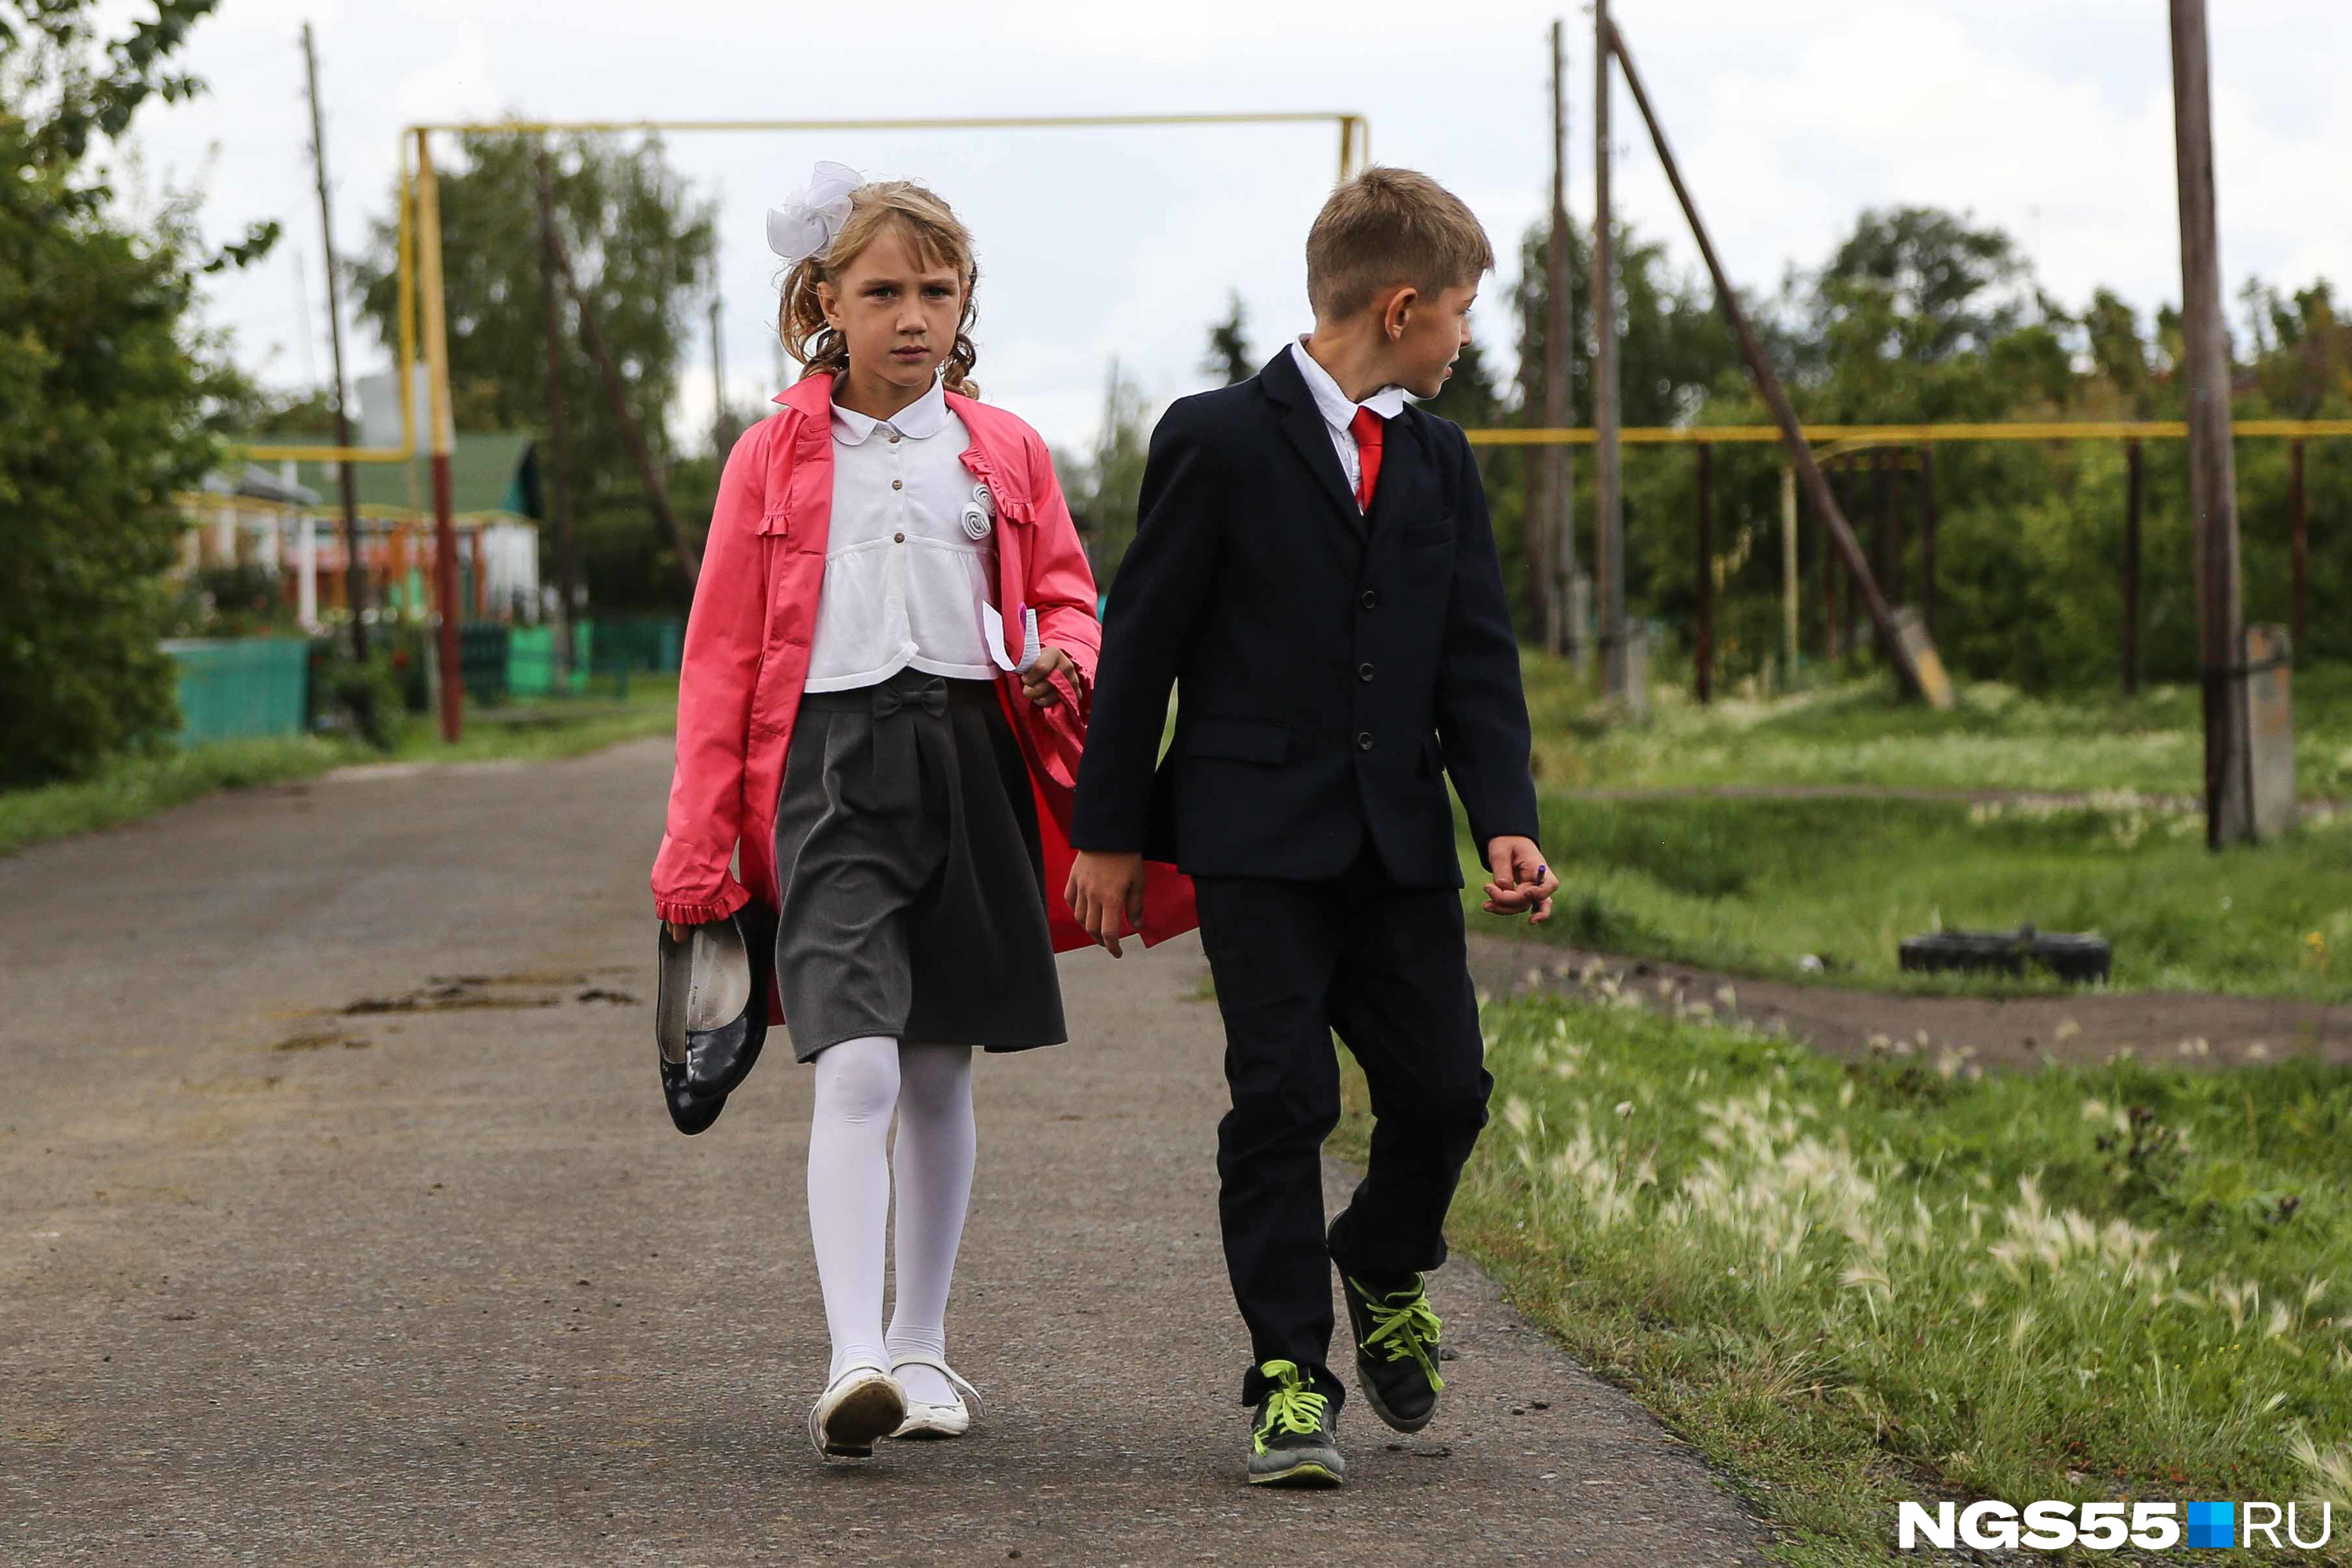 Судя по всему, обувь для учеников Ковалёво делится на школьную и уличную